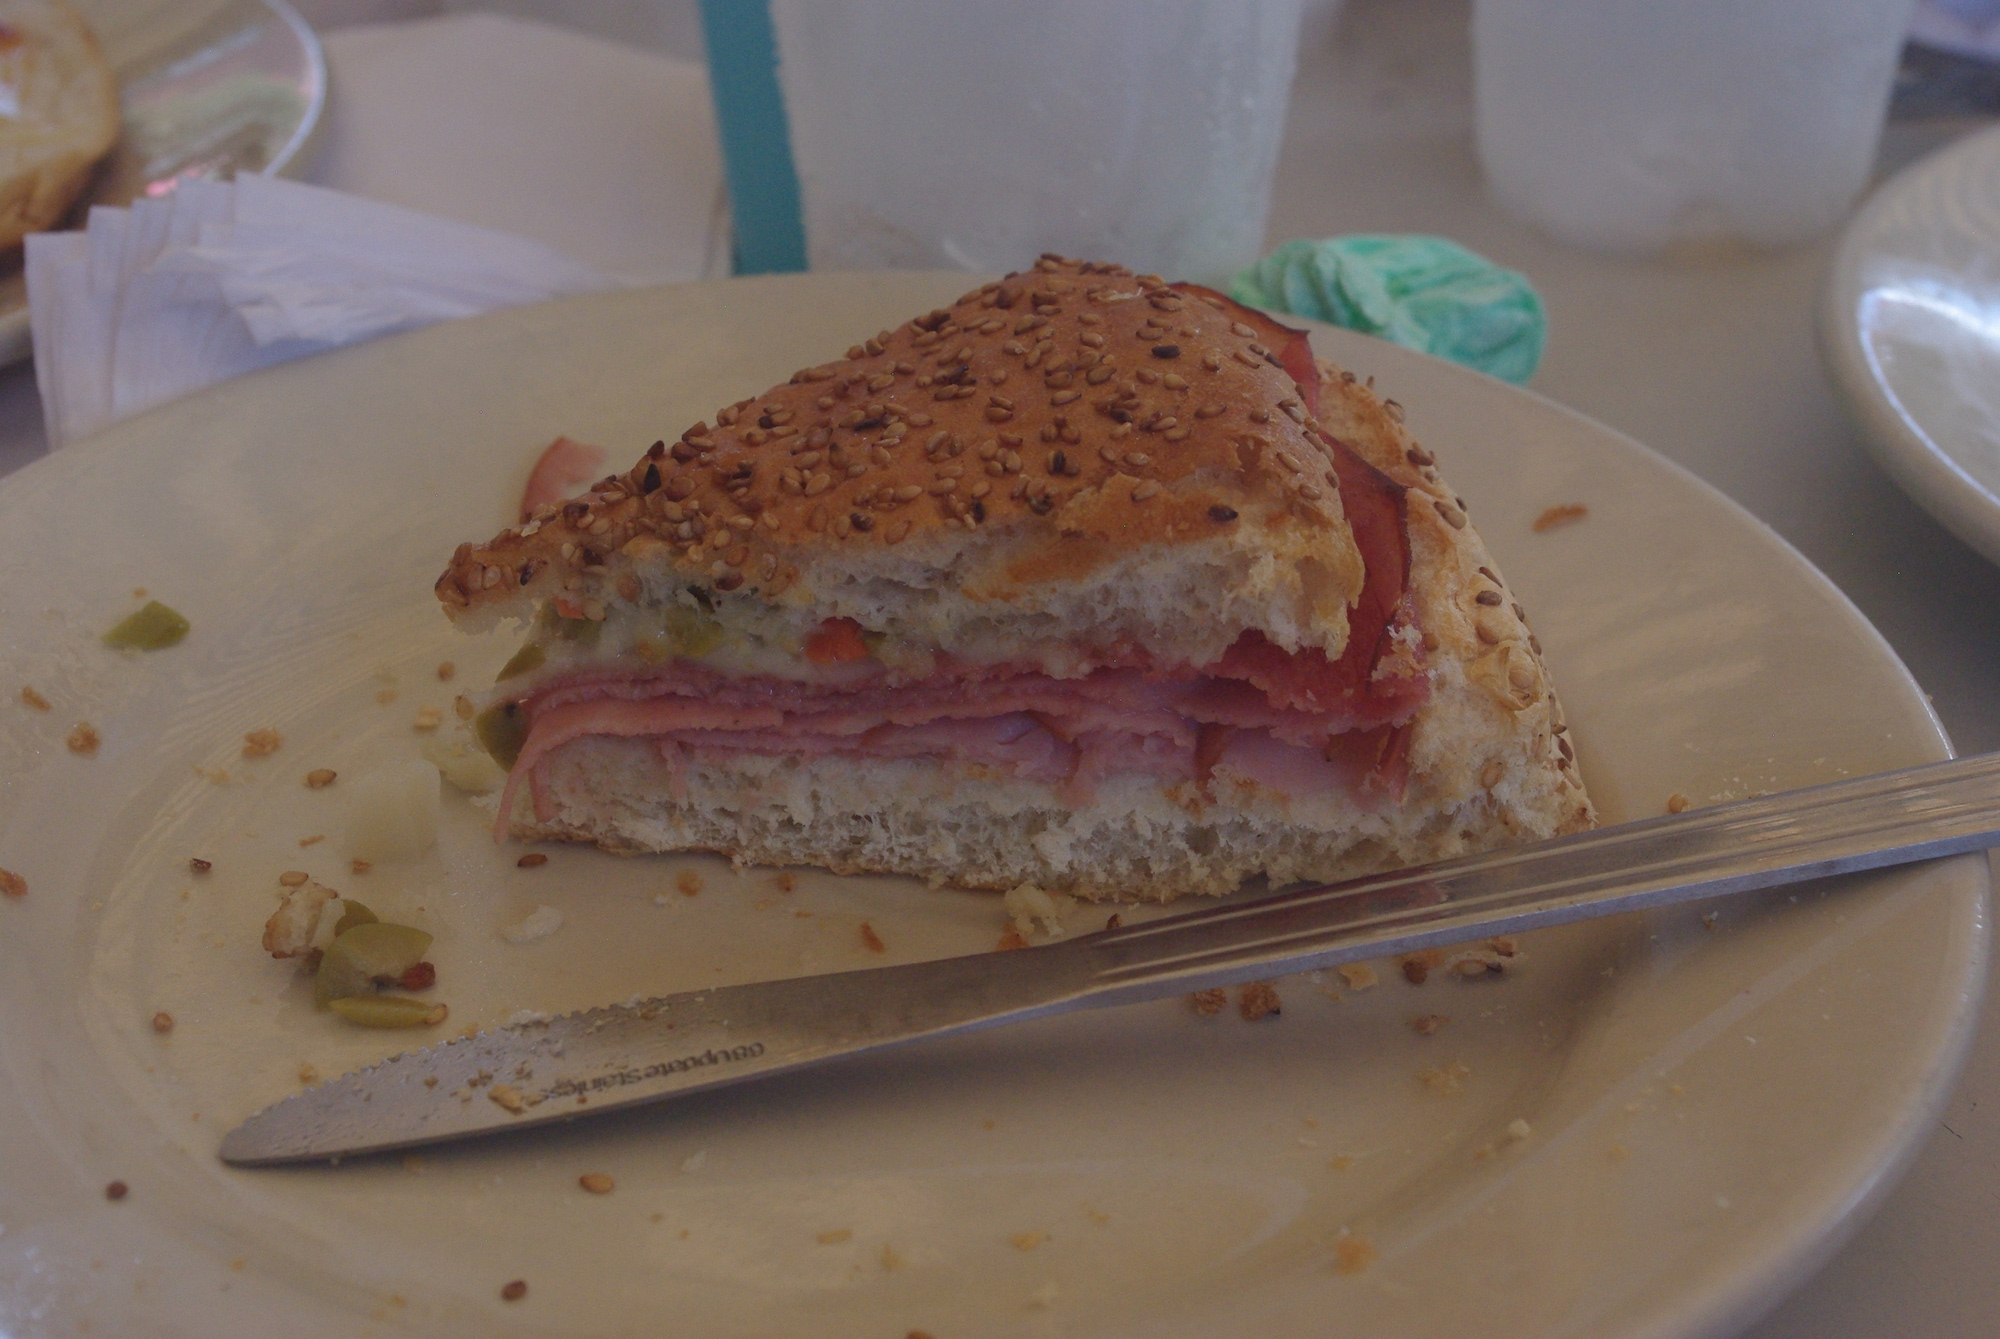 La muffuletta, un sandwich avec fromage, mortadelle et olive. Très bon et tient bien au ventre